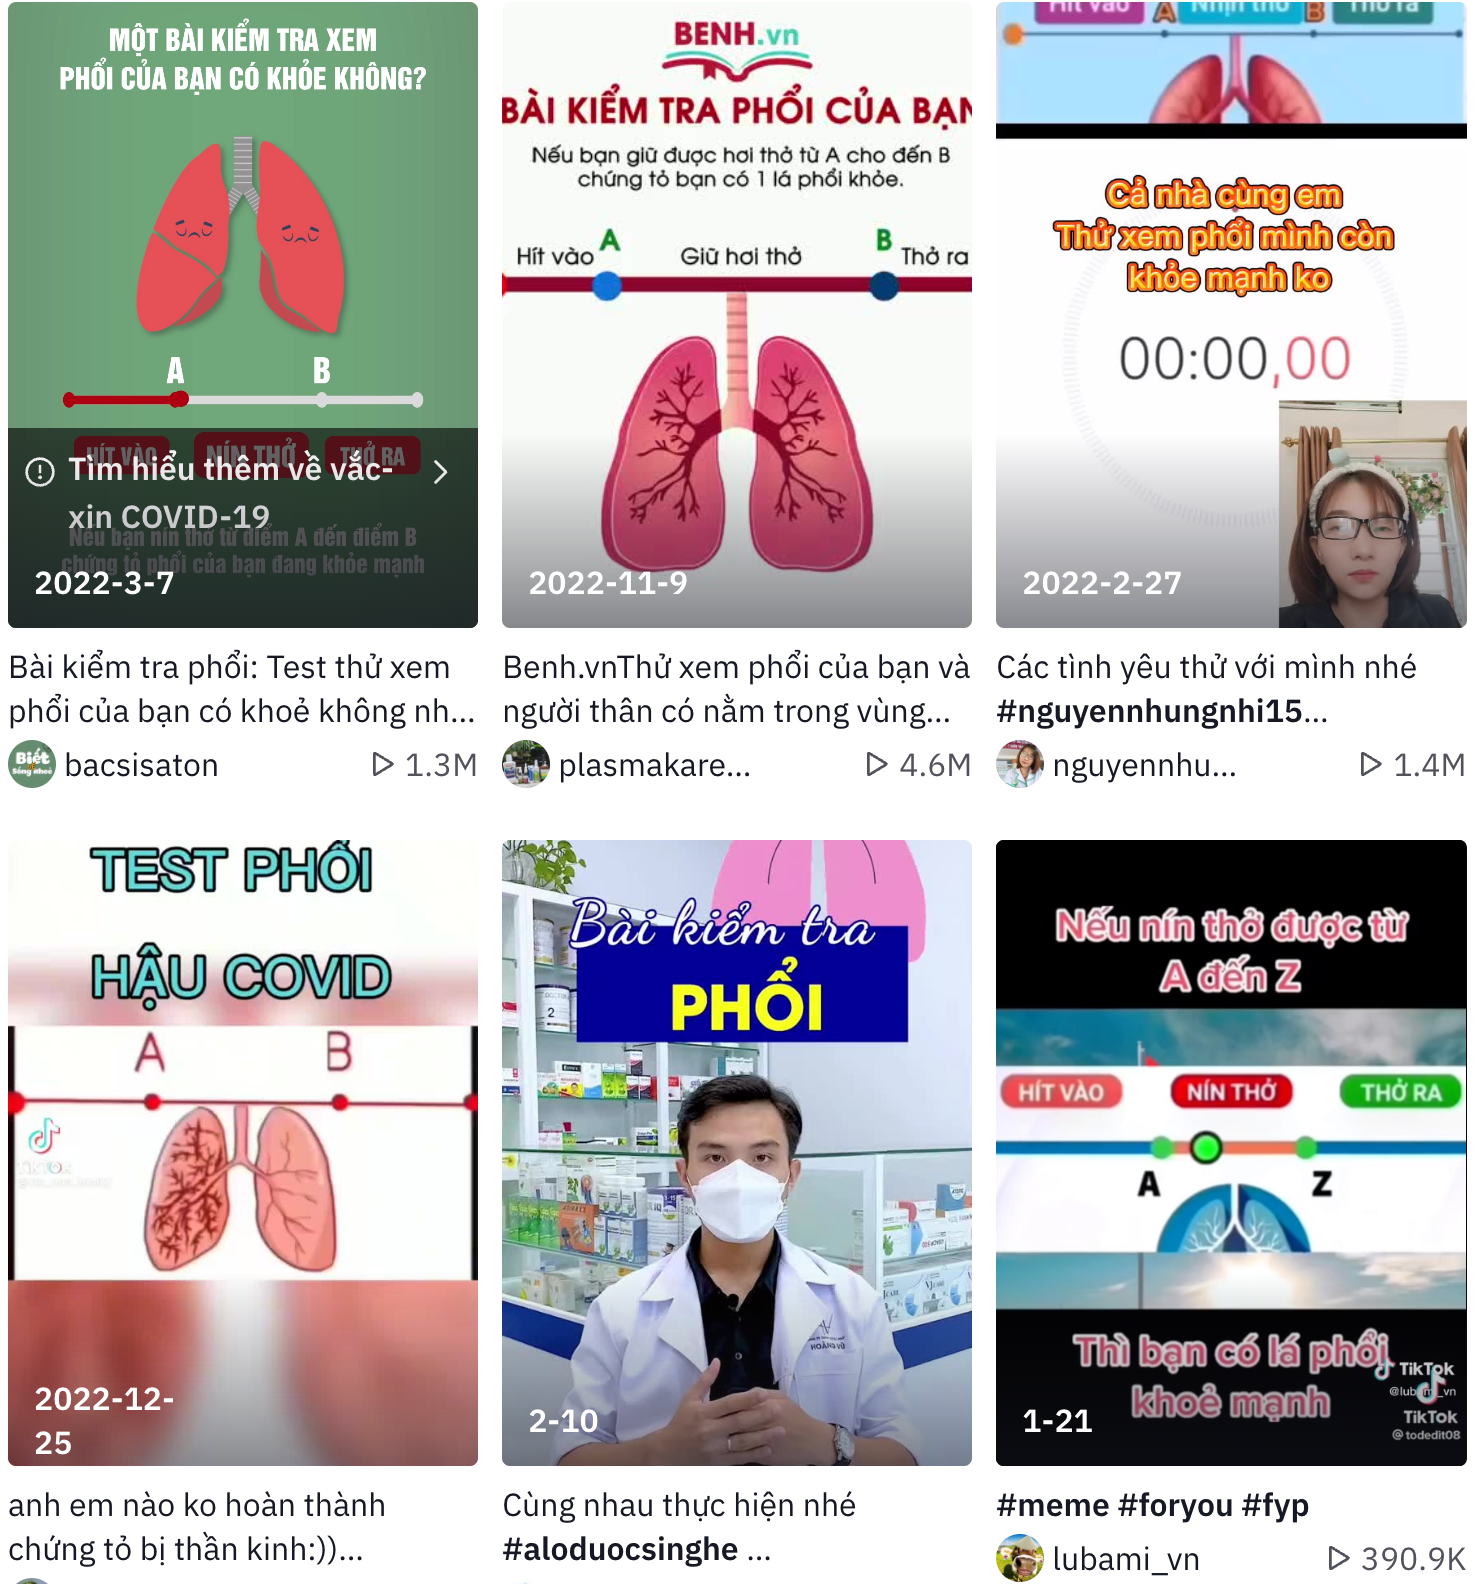 Khoảng trung tuần tháng 2/2023, một trào lưu rầm rộ trên TikTok là kiểm tra sức khỏe lá phổi bằng cách nín thở. Tuy nhiên, theo một số bác sĩ chuyên khoa hô hấp, việc kiểm tra phổi bằng cách nín thở không có ý nghĩa và hoàn toàn không đúng về mặt y khoa.